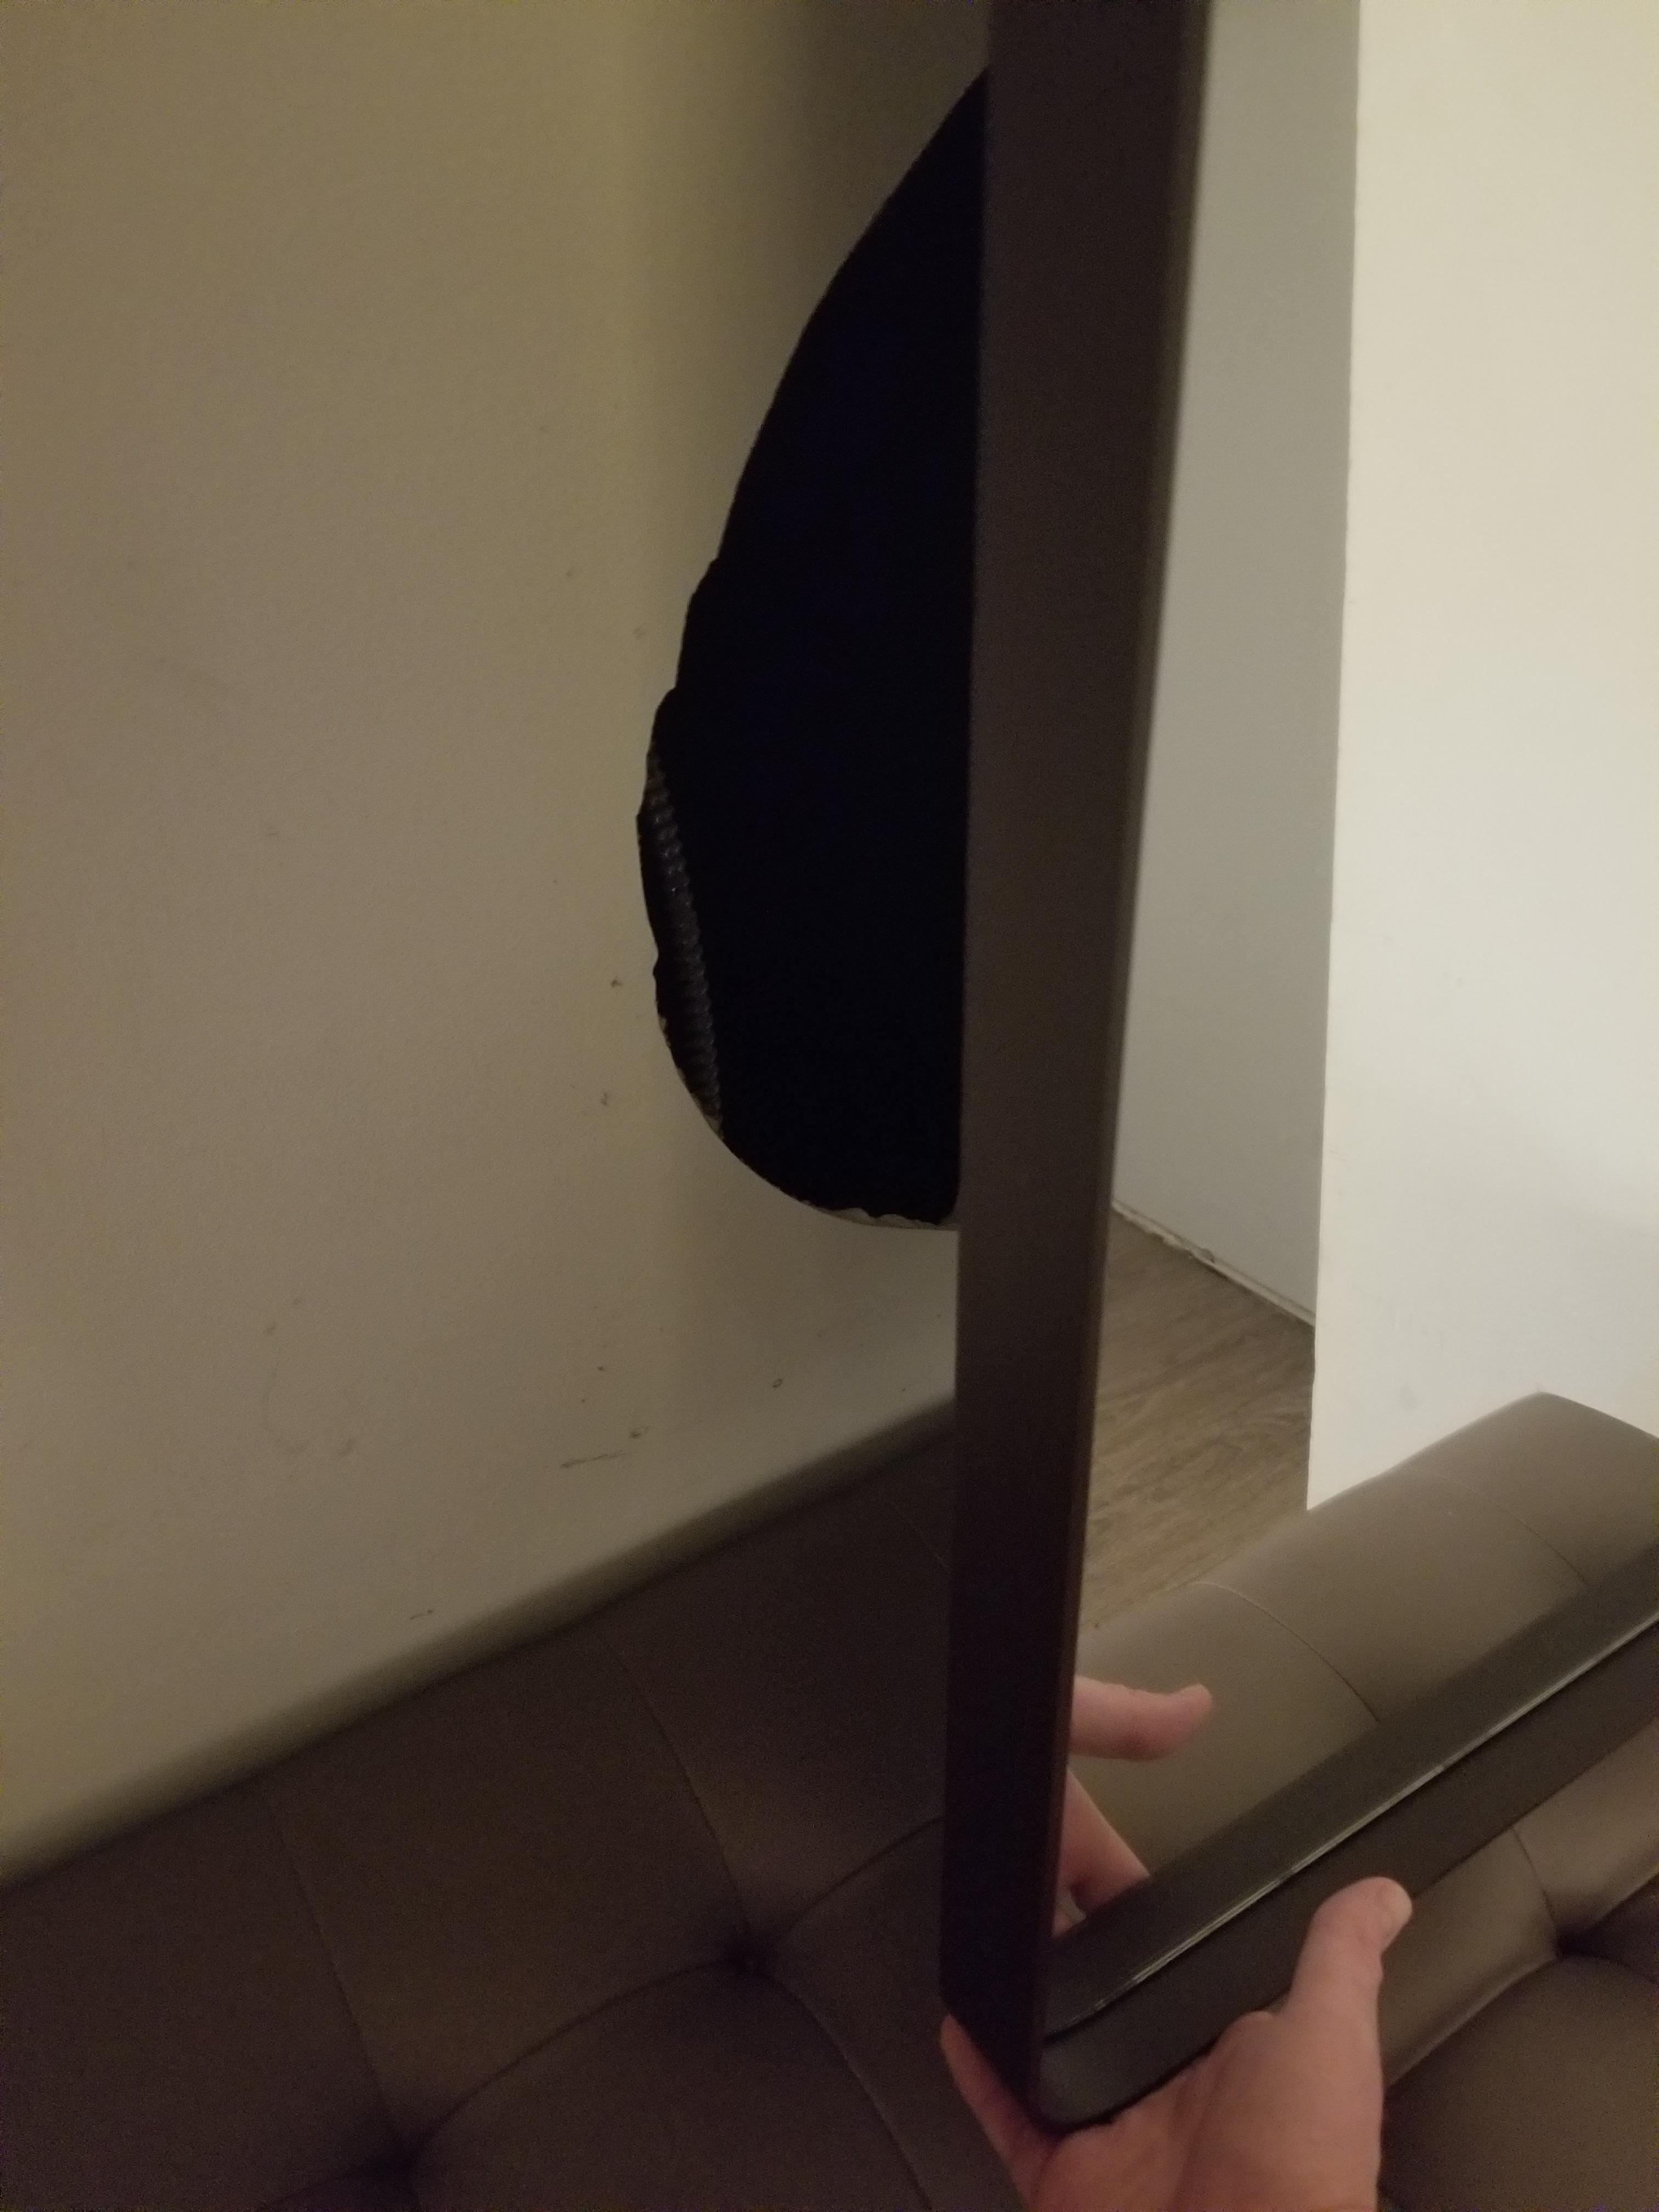 J'ai vu le miroir de ma chambre d'hôtel trembler de façon aléatoire et j'ai découvert cet espace dans le mur derrière lui.